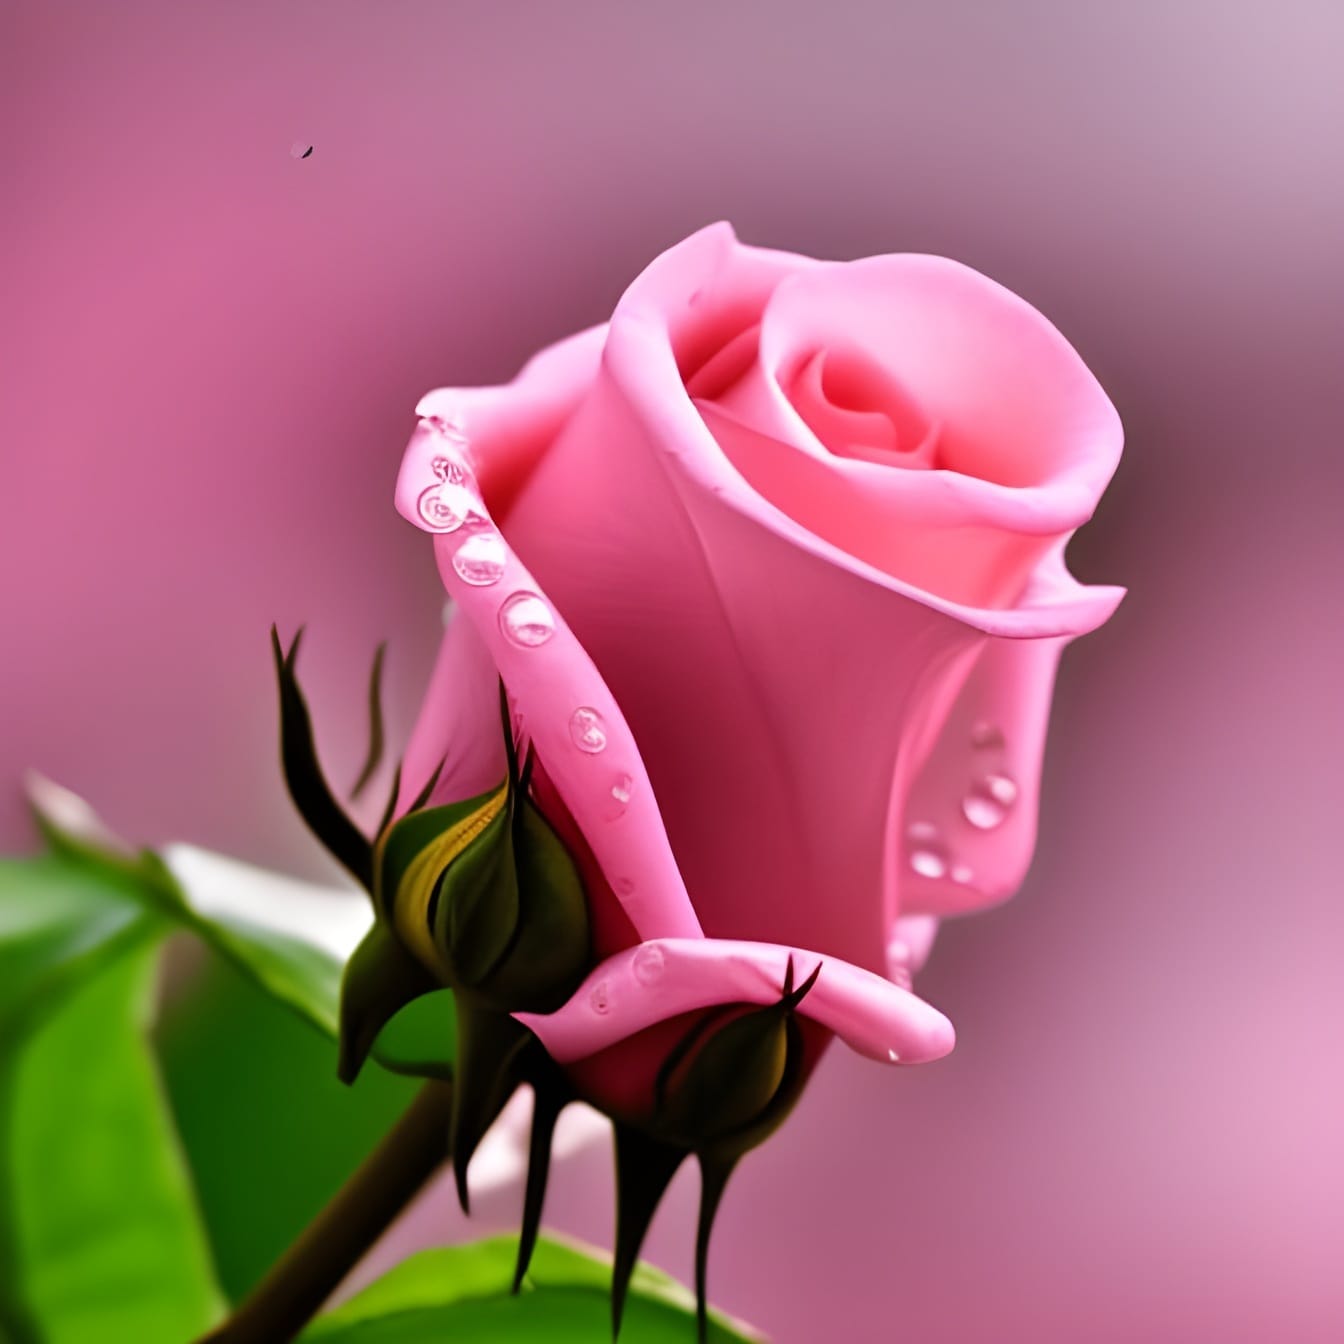 Nụ hoa hồng hồng với những giọt nước trên cánh hoa cận cảnh – nghệ thuật trí tuệ nhân tạo